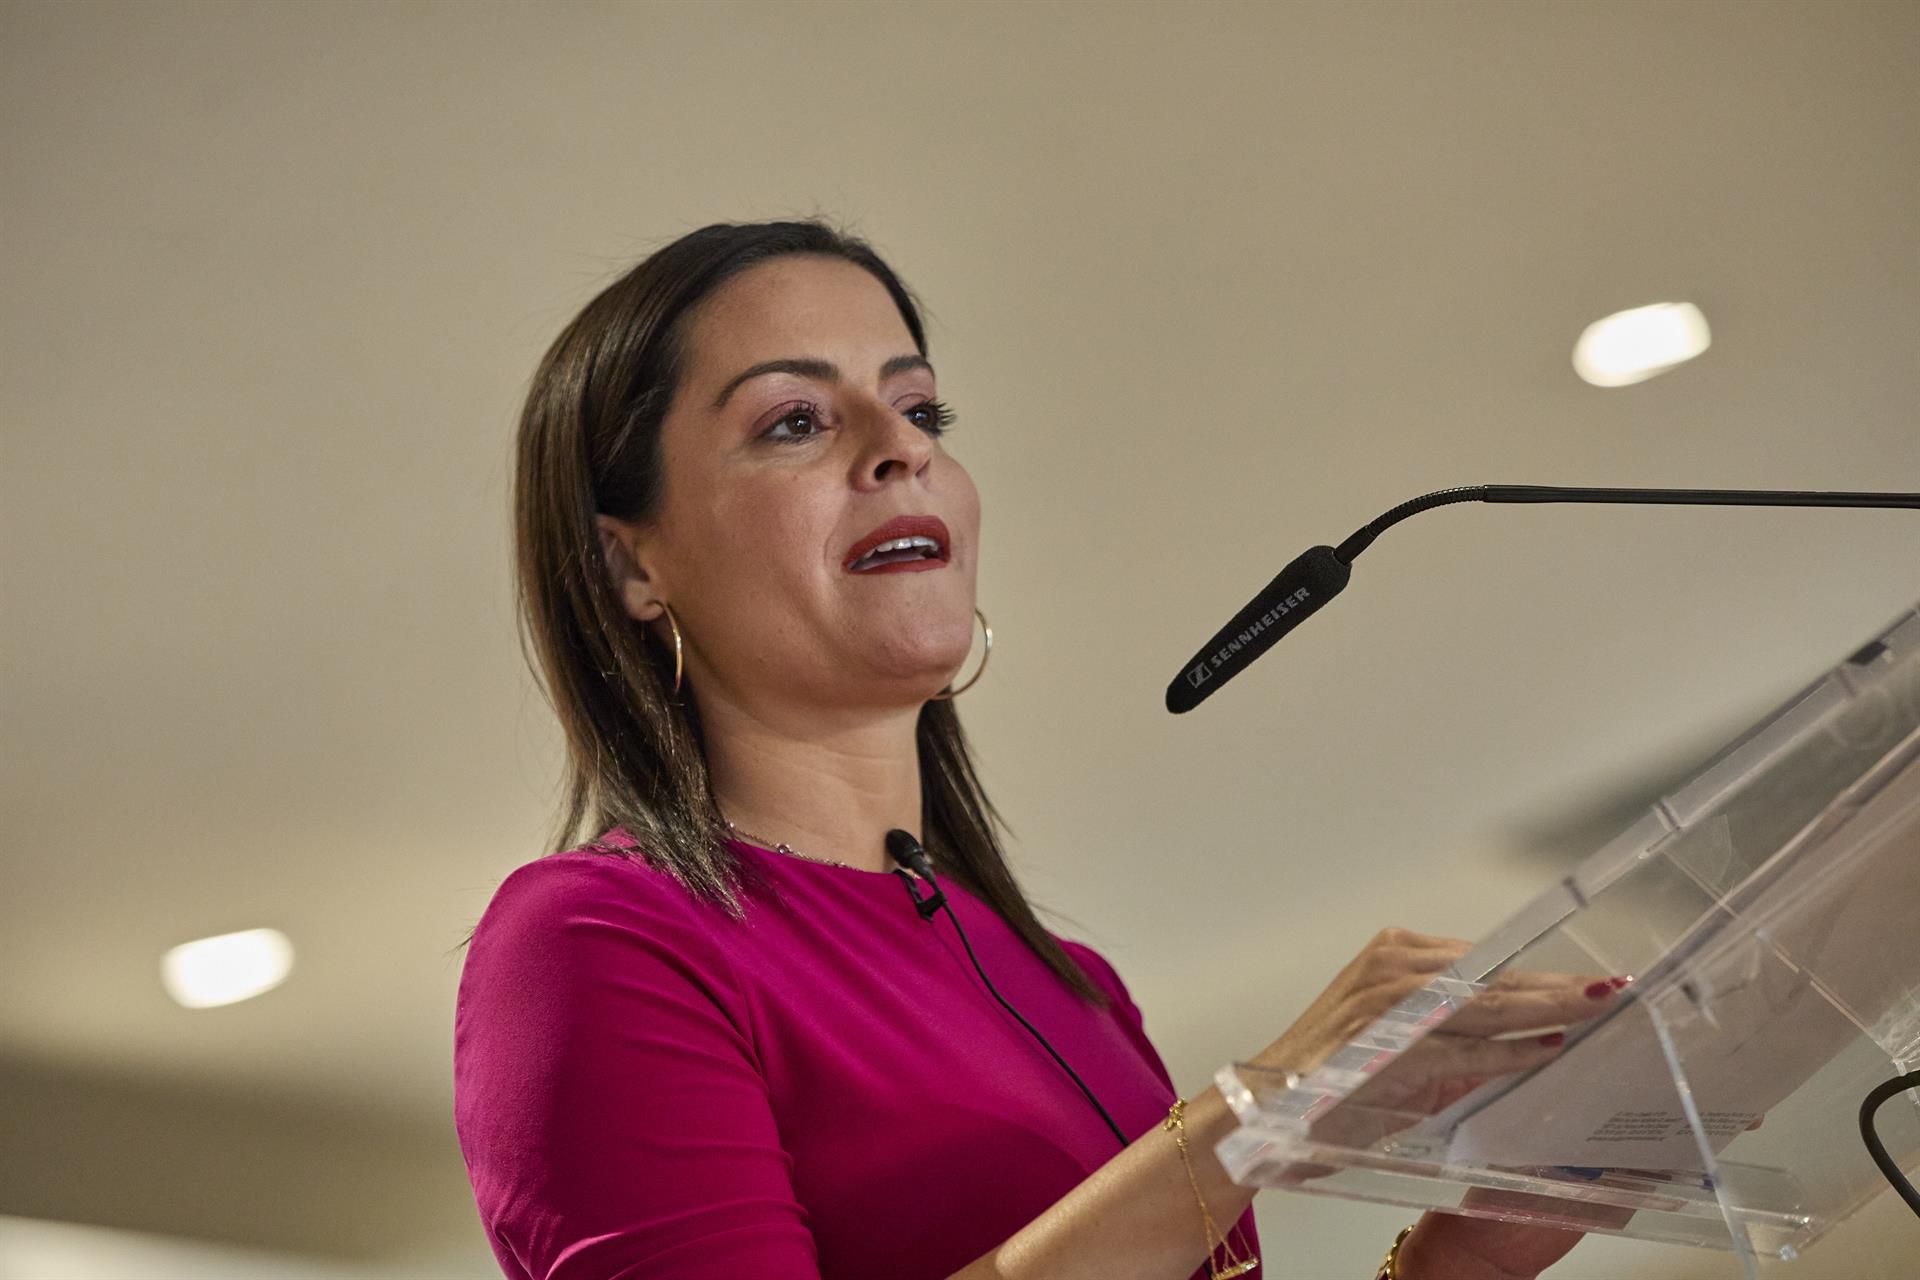 La consejera de Turismo, Yaiza Castilla, anuncia que no concurrirá a las próximas elecciones